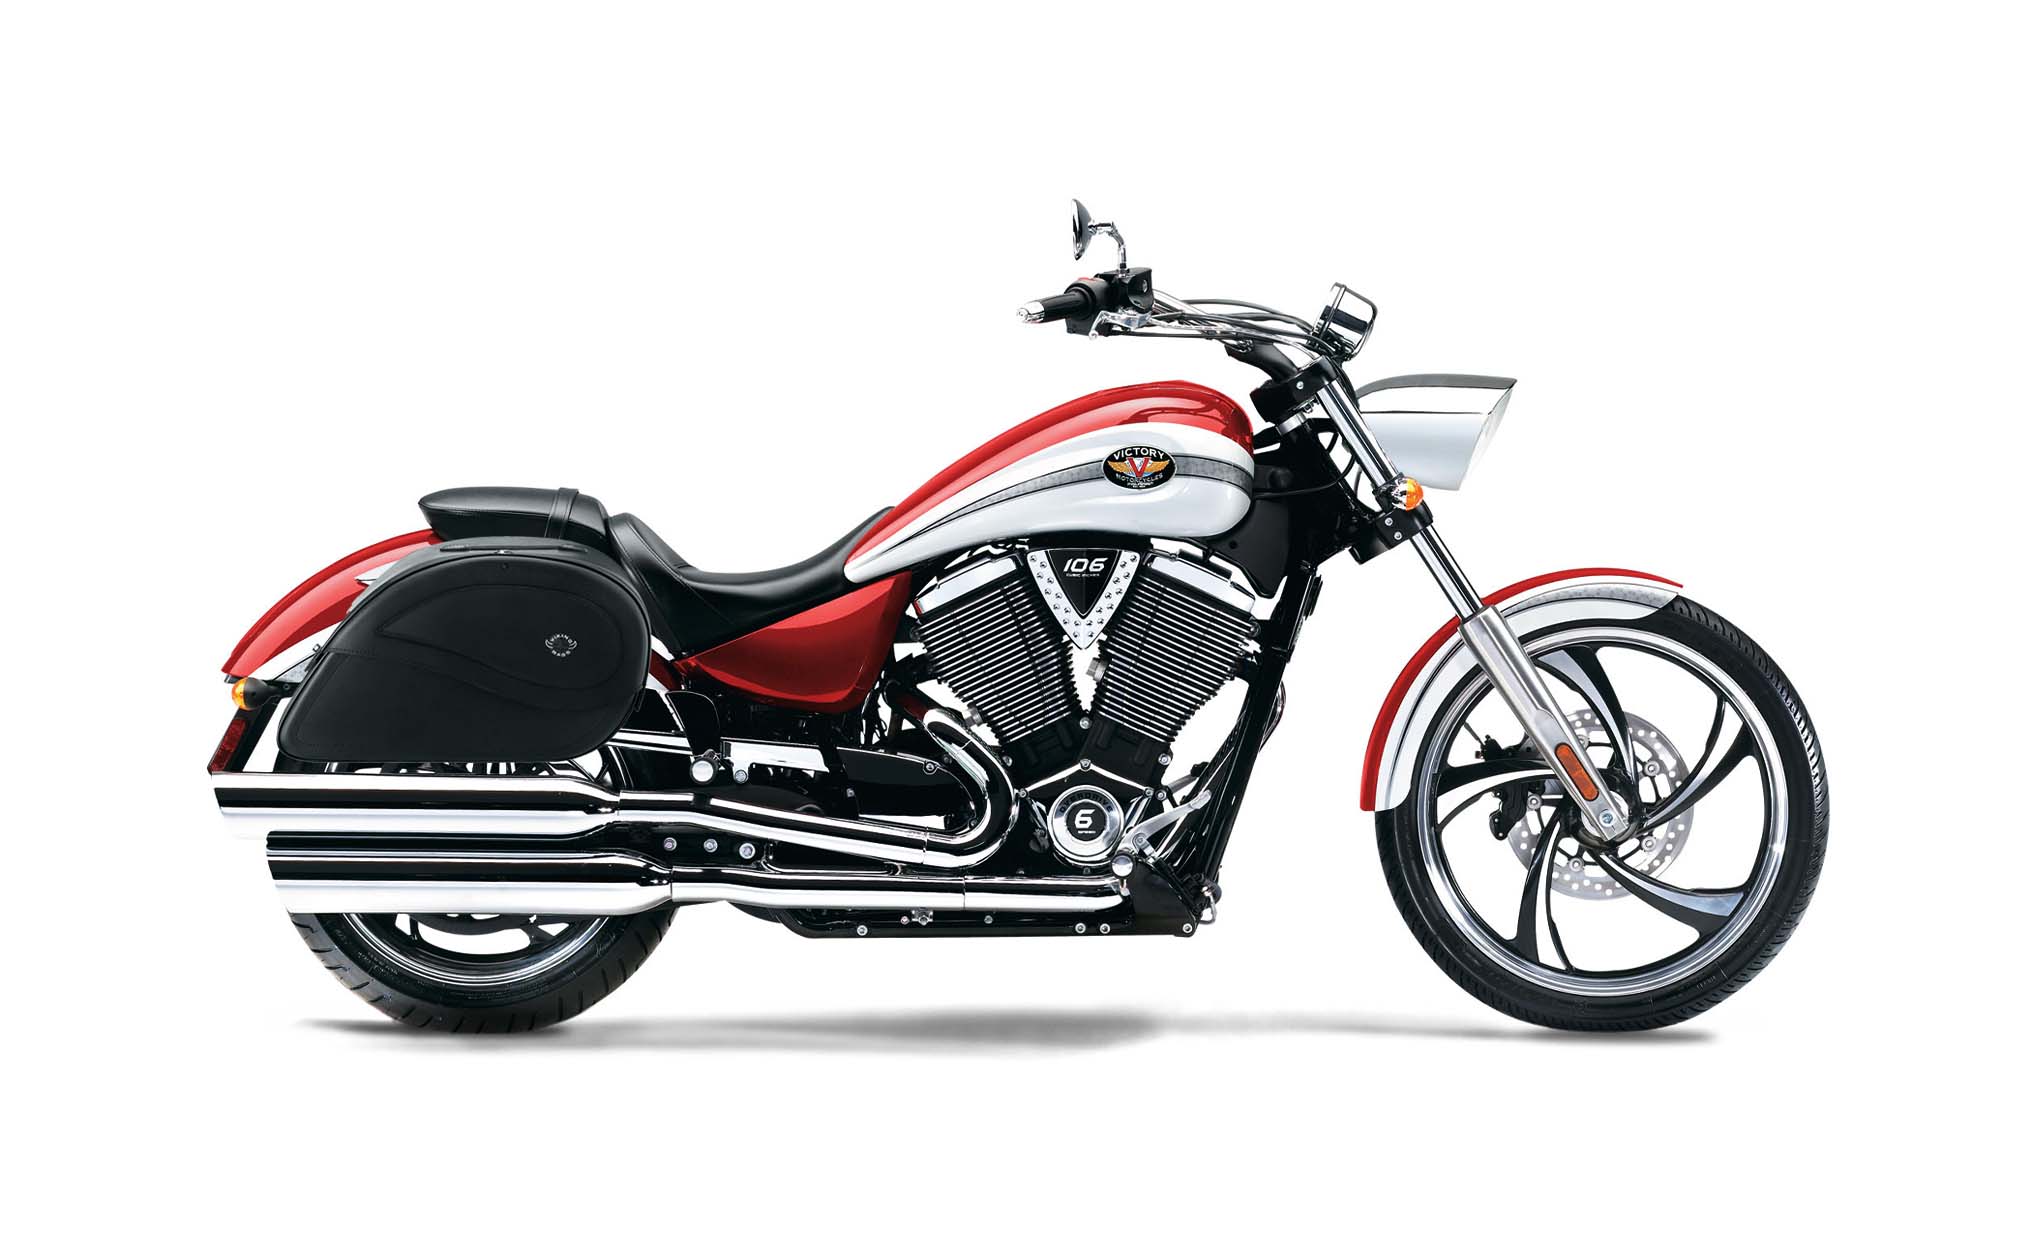 Viking Ultimate Large Victory Vegas Leather Motorcycle Saddlebags on Bike Photo @expand